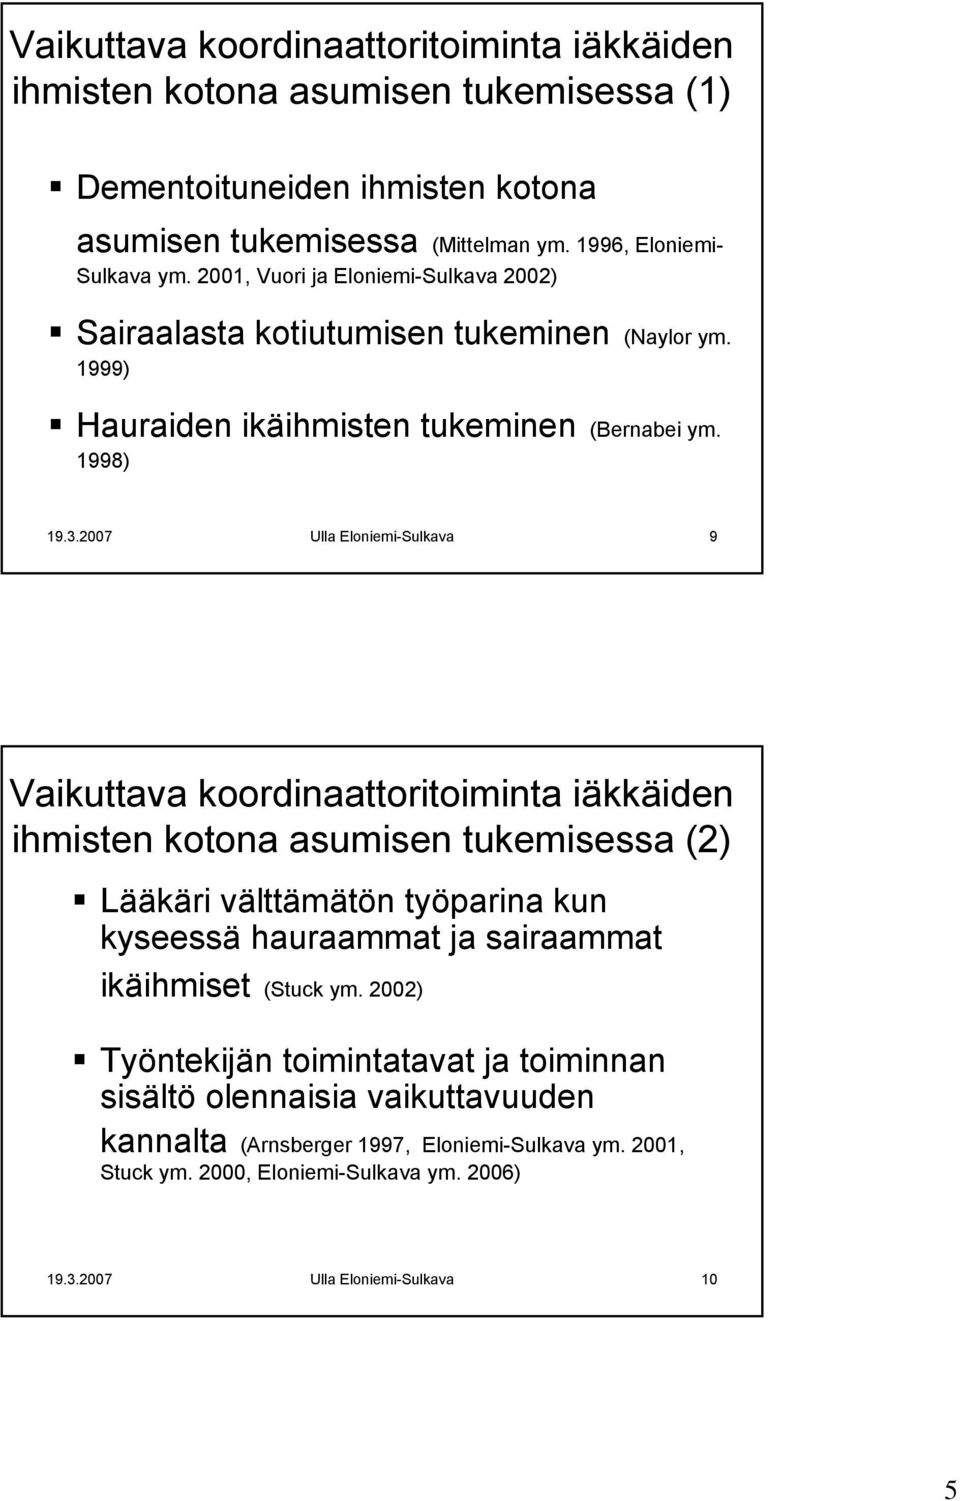 2007 Ulla Eloniemi-Sulkava 9 Vaikuttava koordinaattoritoiminta iäkkäiden ihmisten kotona asumisen tukemisessa (2) Lääkäri välttämätön työparina kun kyseessä hauraammat ja sairaammat